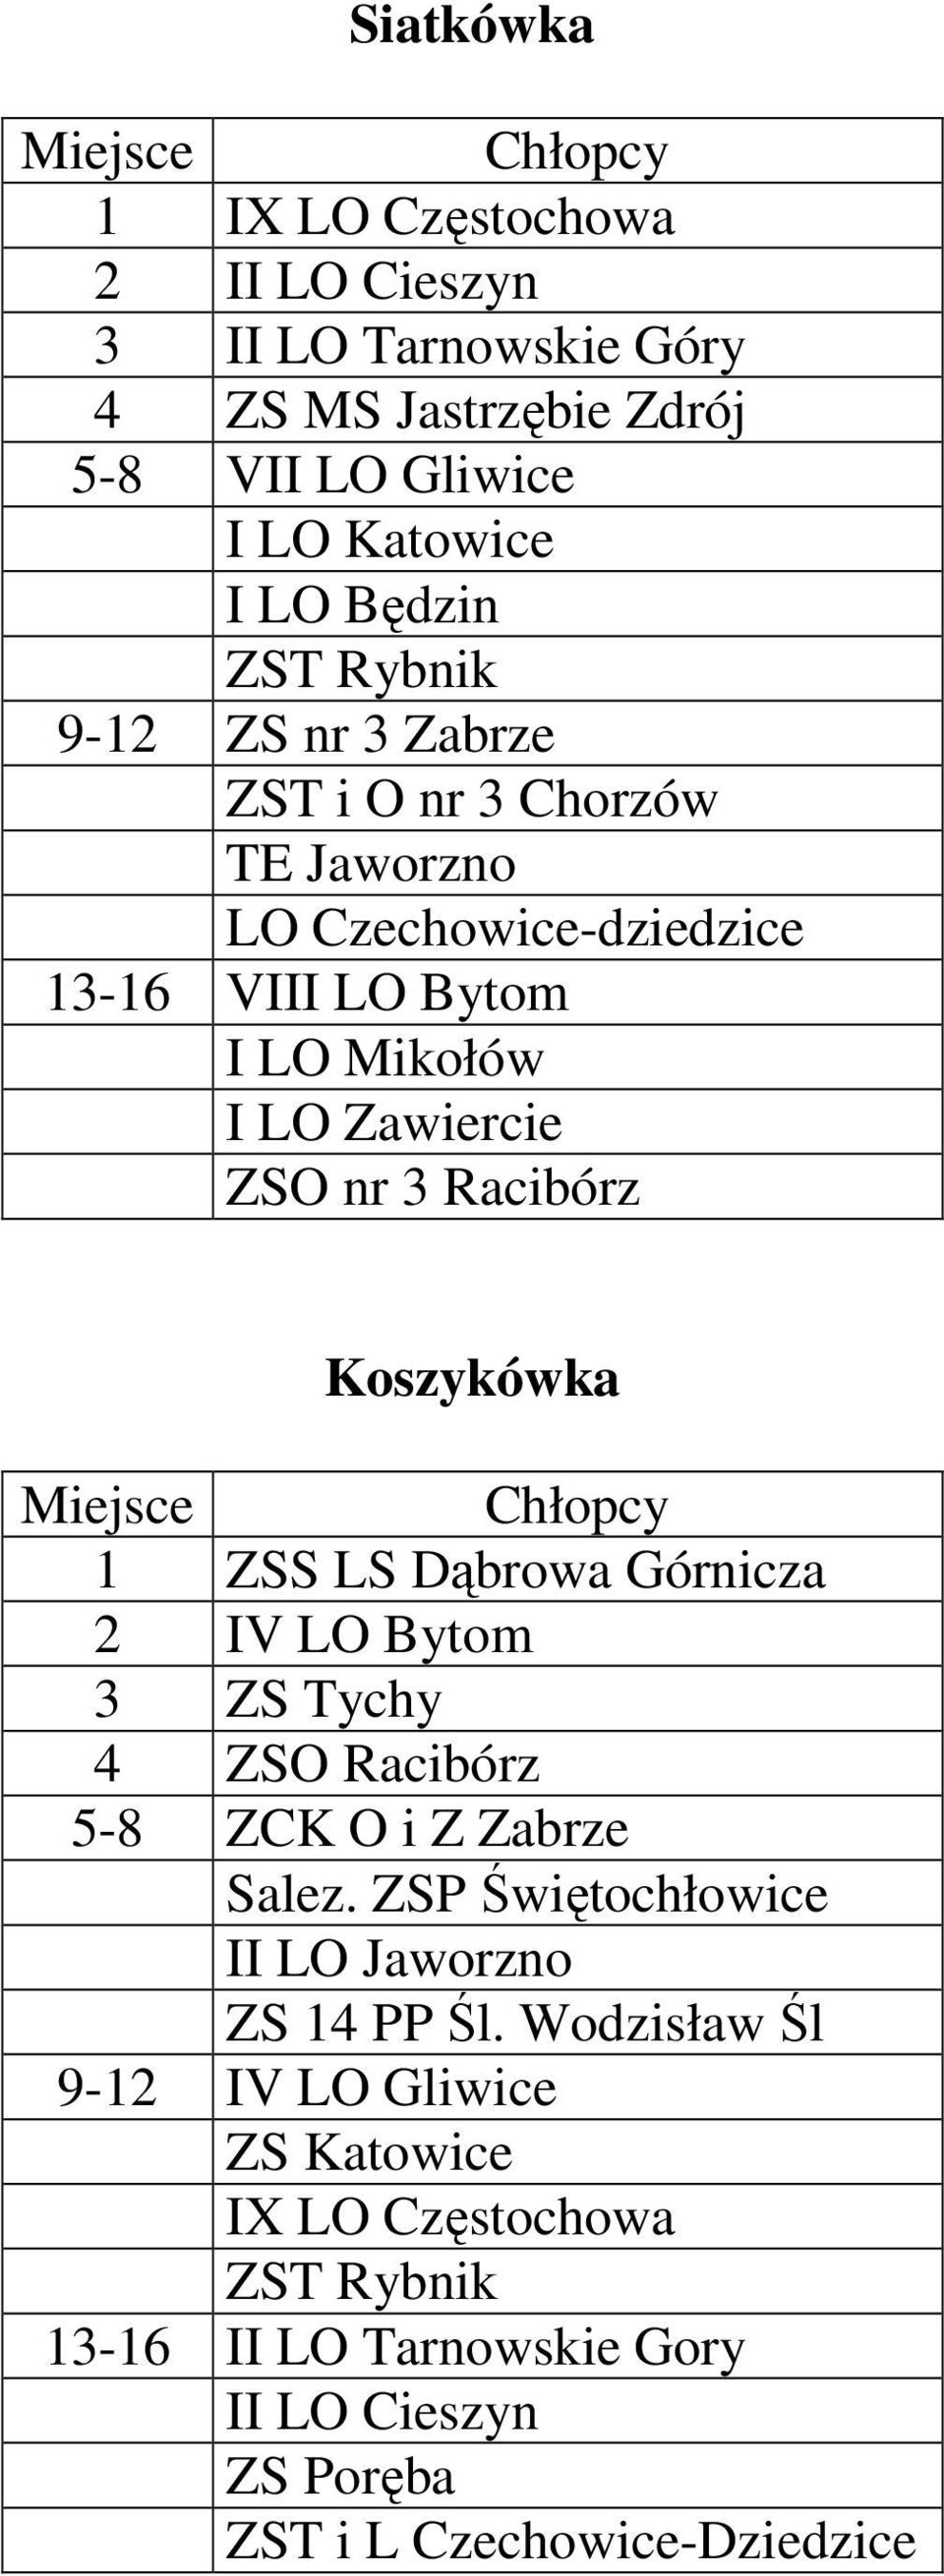 Koszykówka 1 ZSS LS Dąbrowa Górnicza 2 IV LO Bytom 3 ZS Tychy 4 ZSO Racibórz 5-8 ZCK O i Z Zabrze Salez.